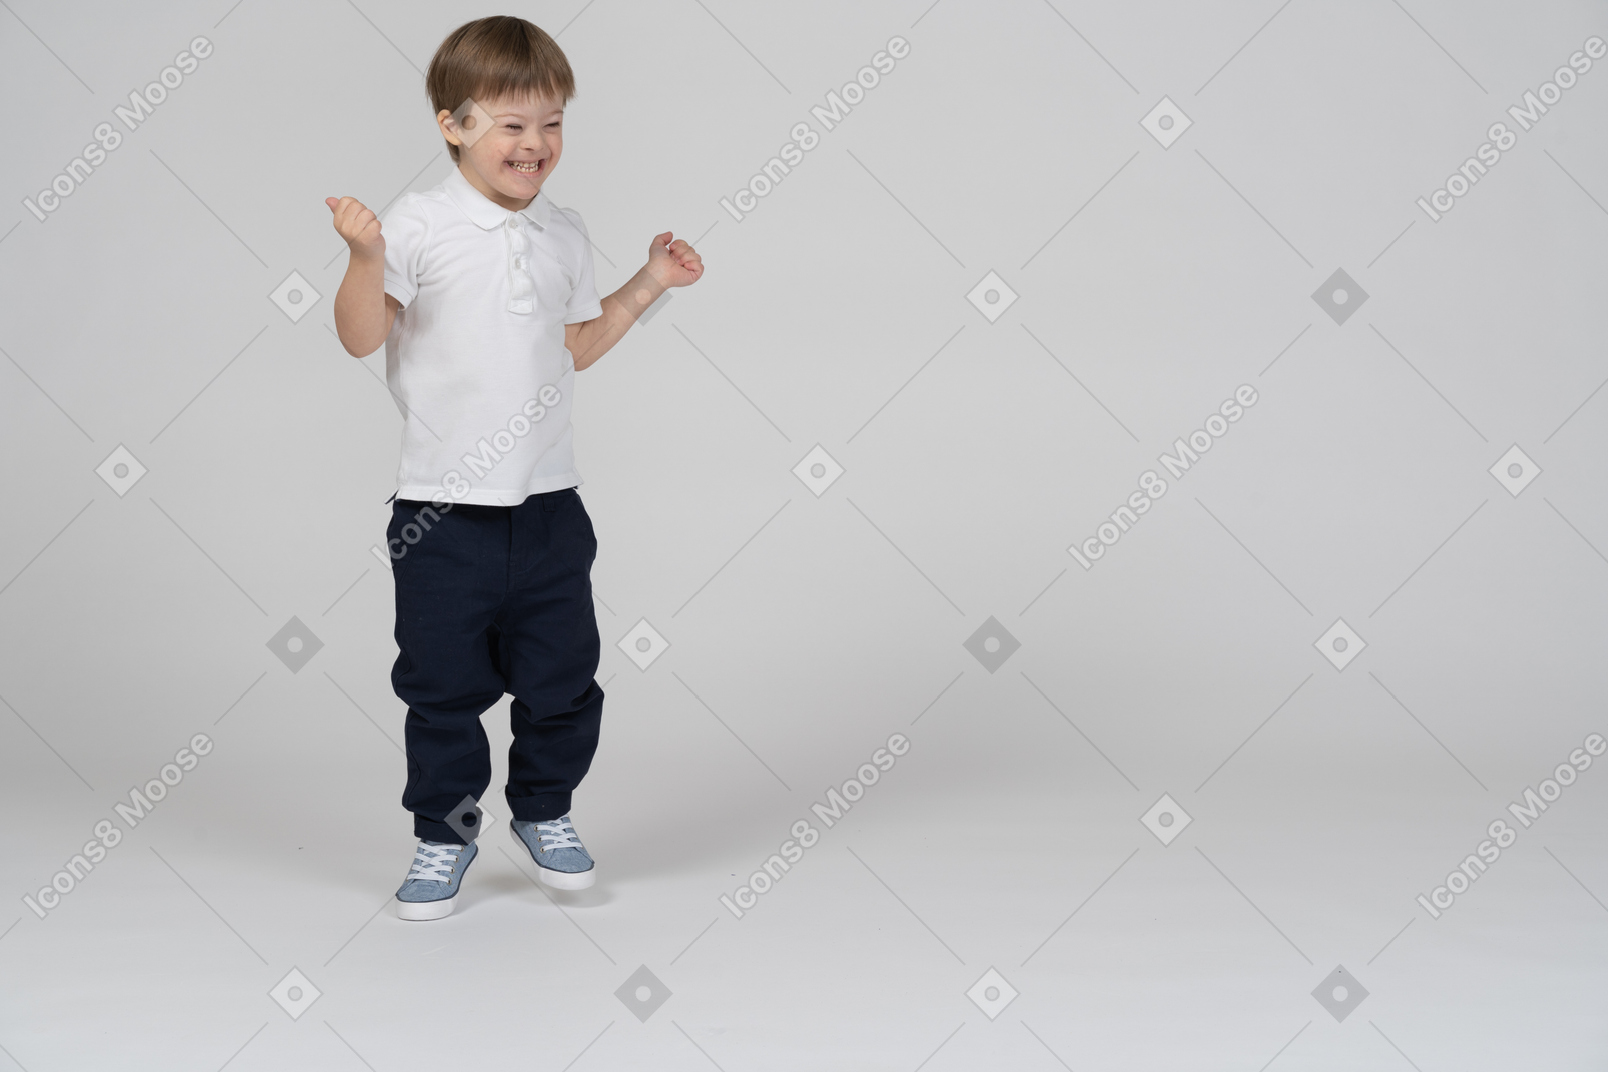 Vue de face d'un garçon sautant et souriant joyeusement